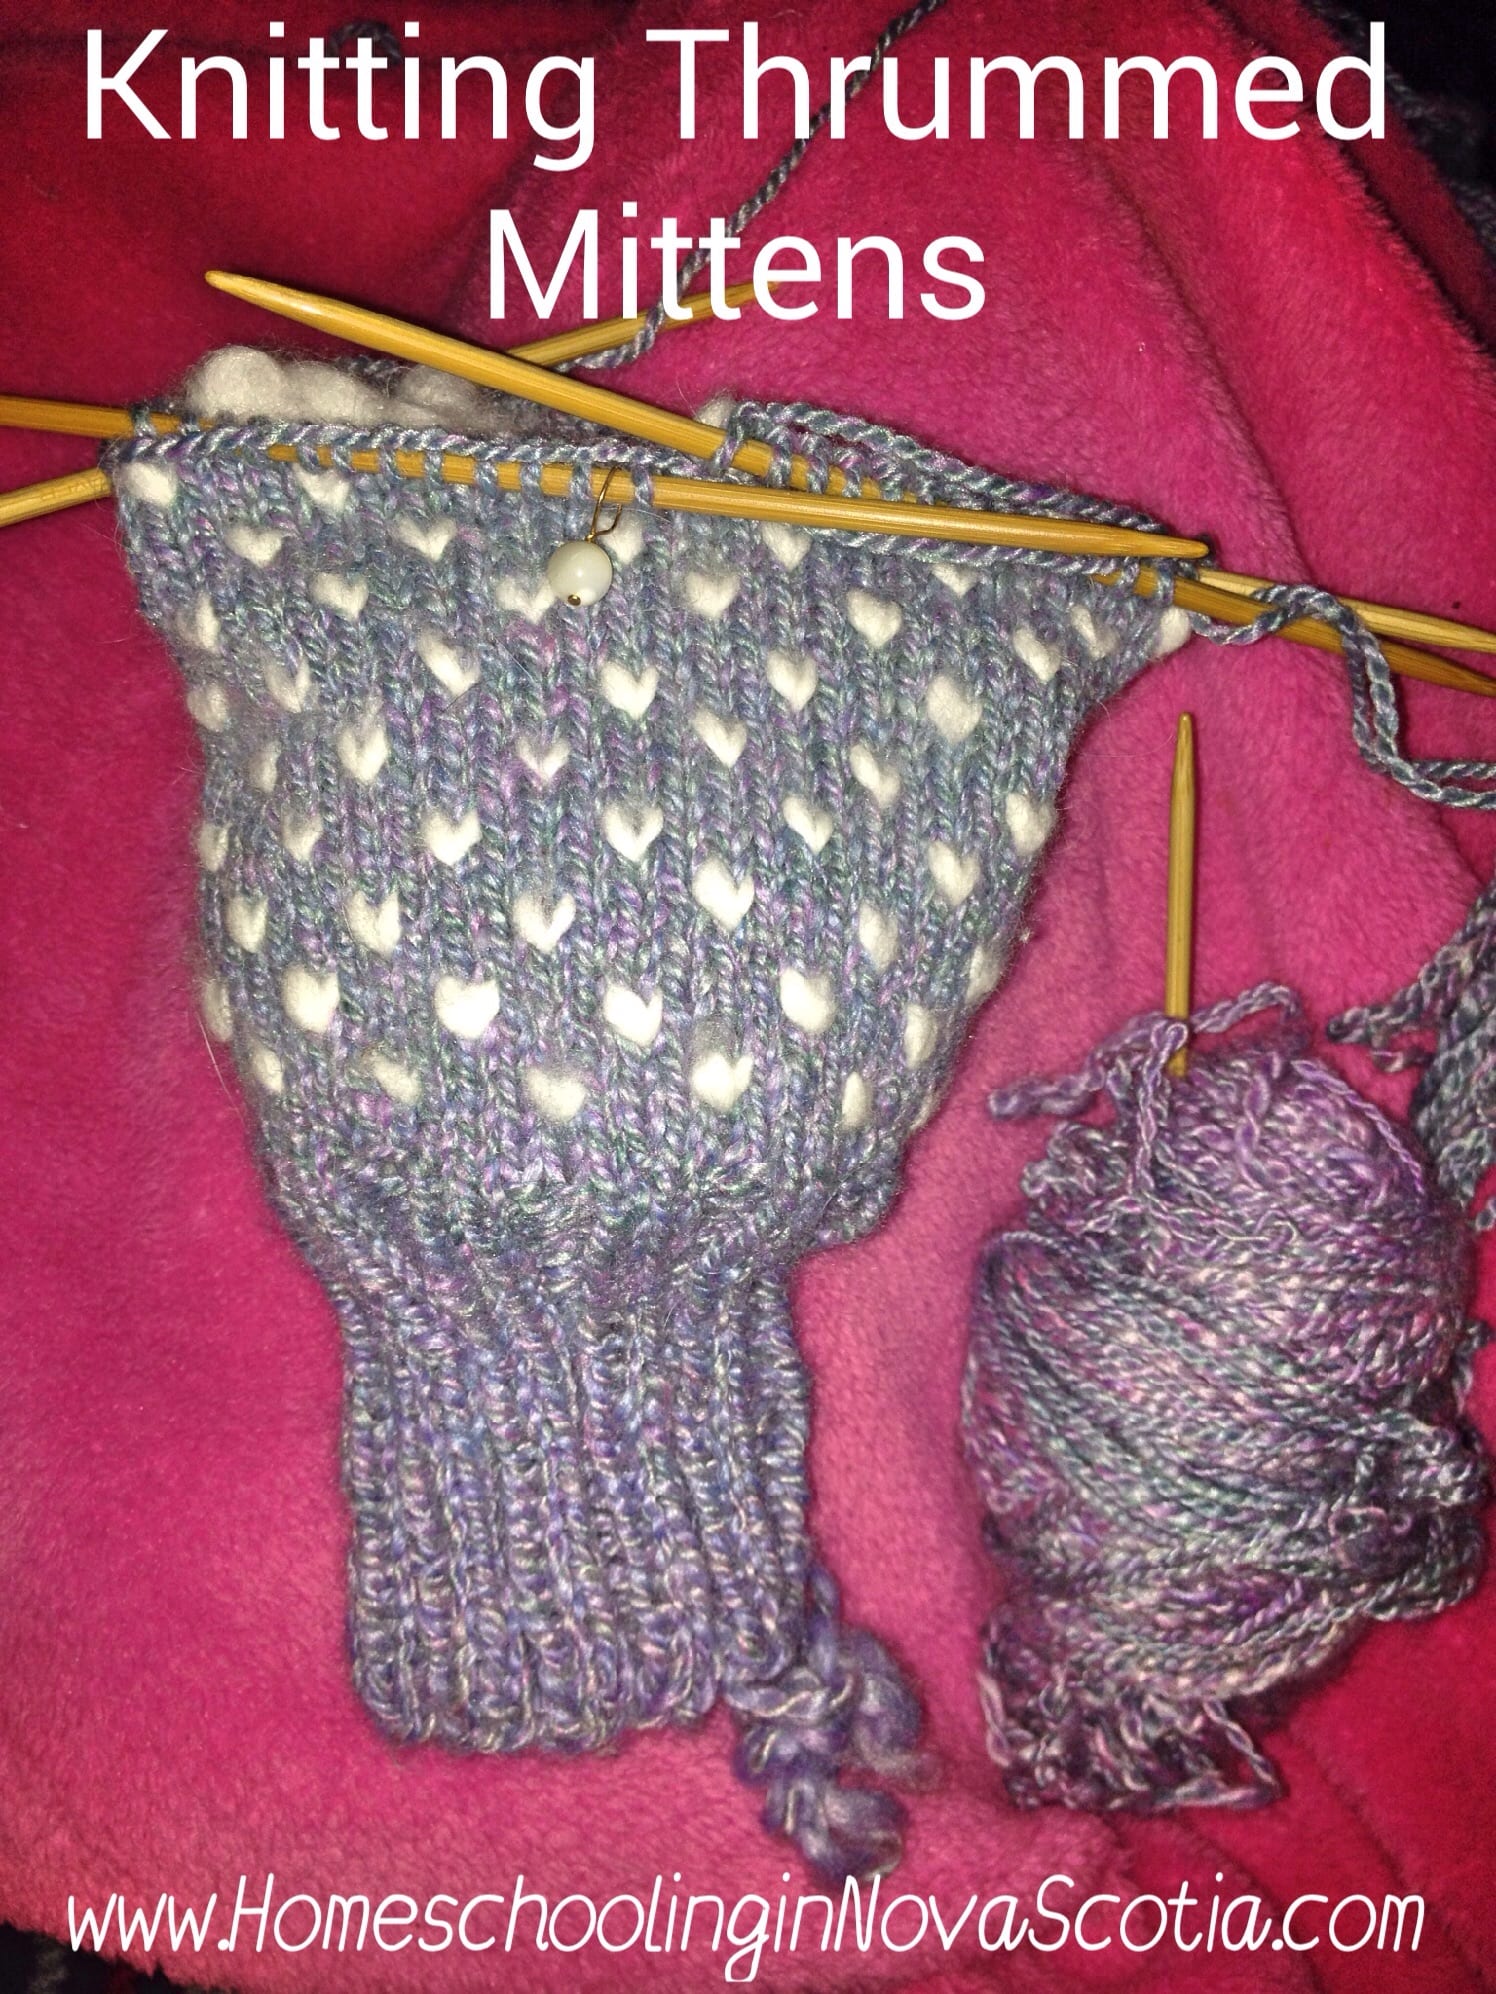 Knitting thrummed mittens